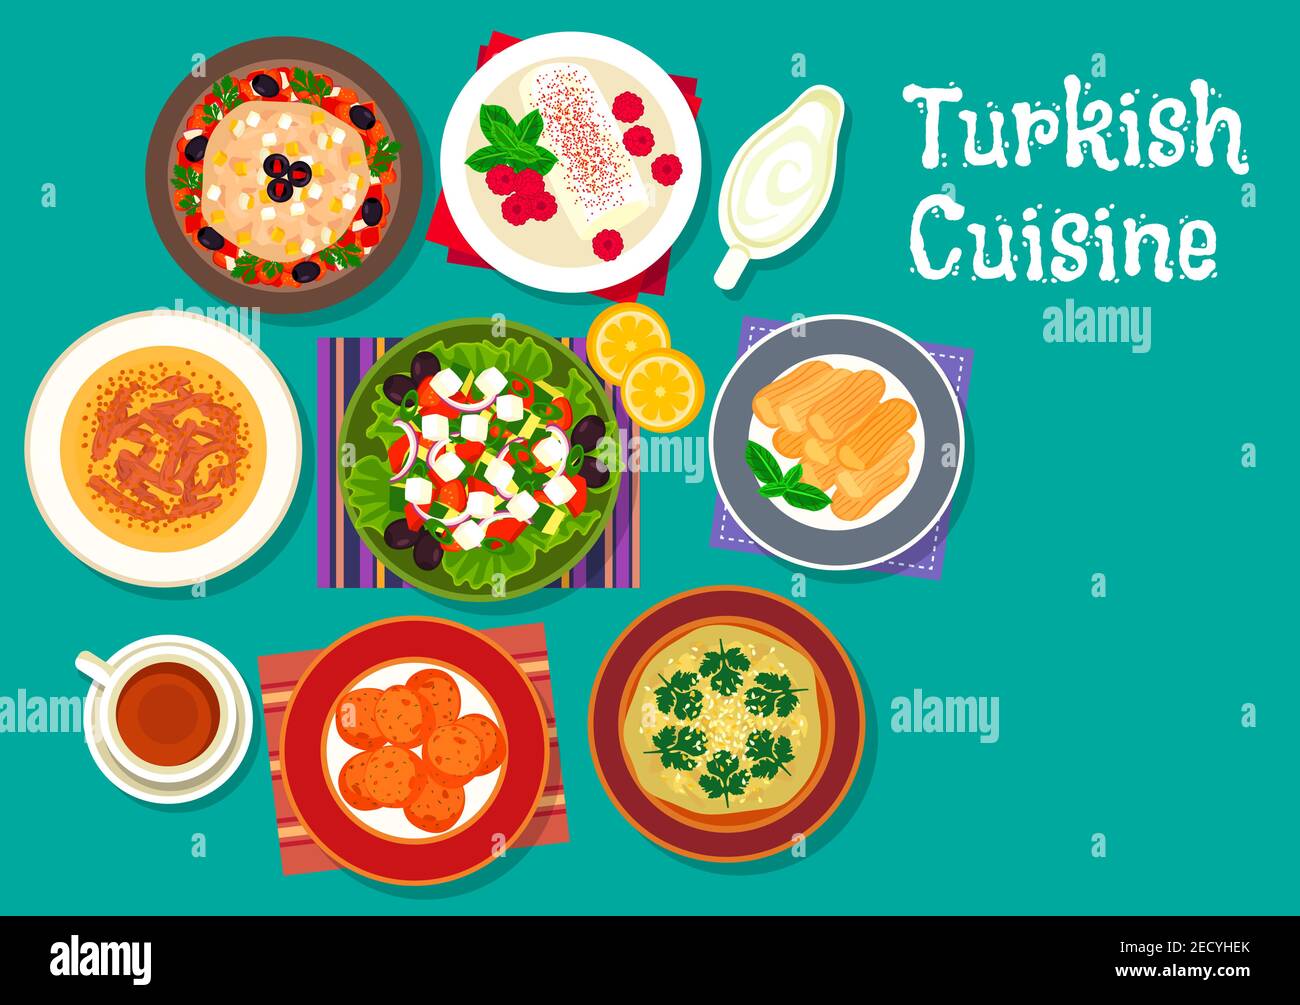 Icône de la cuisine turque avec salade d'aubergines grillées, soupe d'agneau, boulettes de carottes frites, sauce à l'aubergine, salade de légumes avec feta, pouding au poulet sucré Illustration de Vecteur